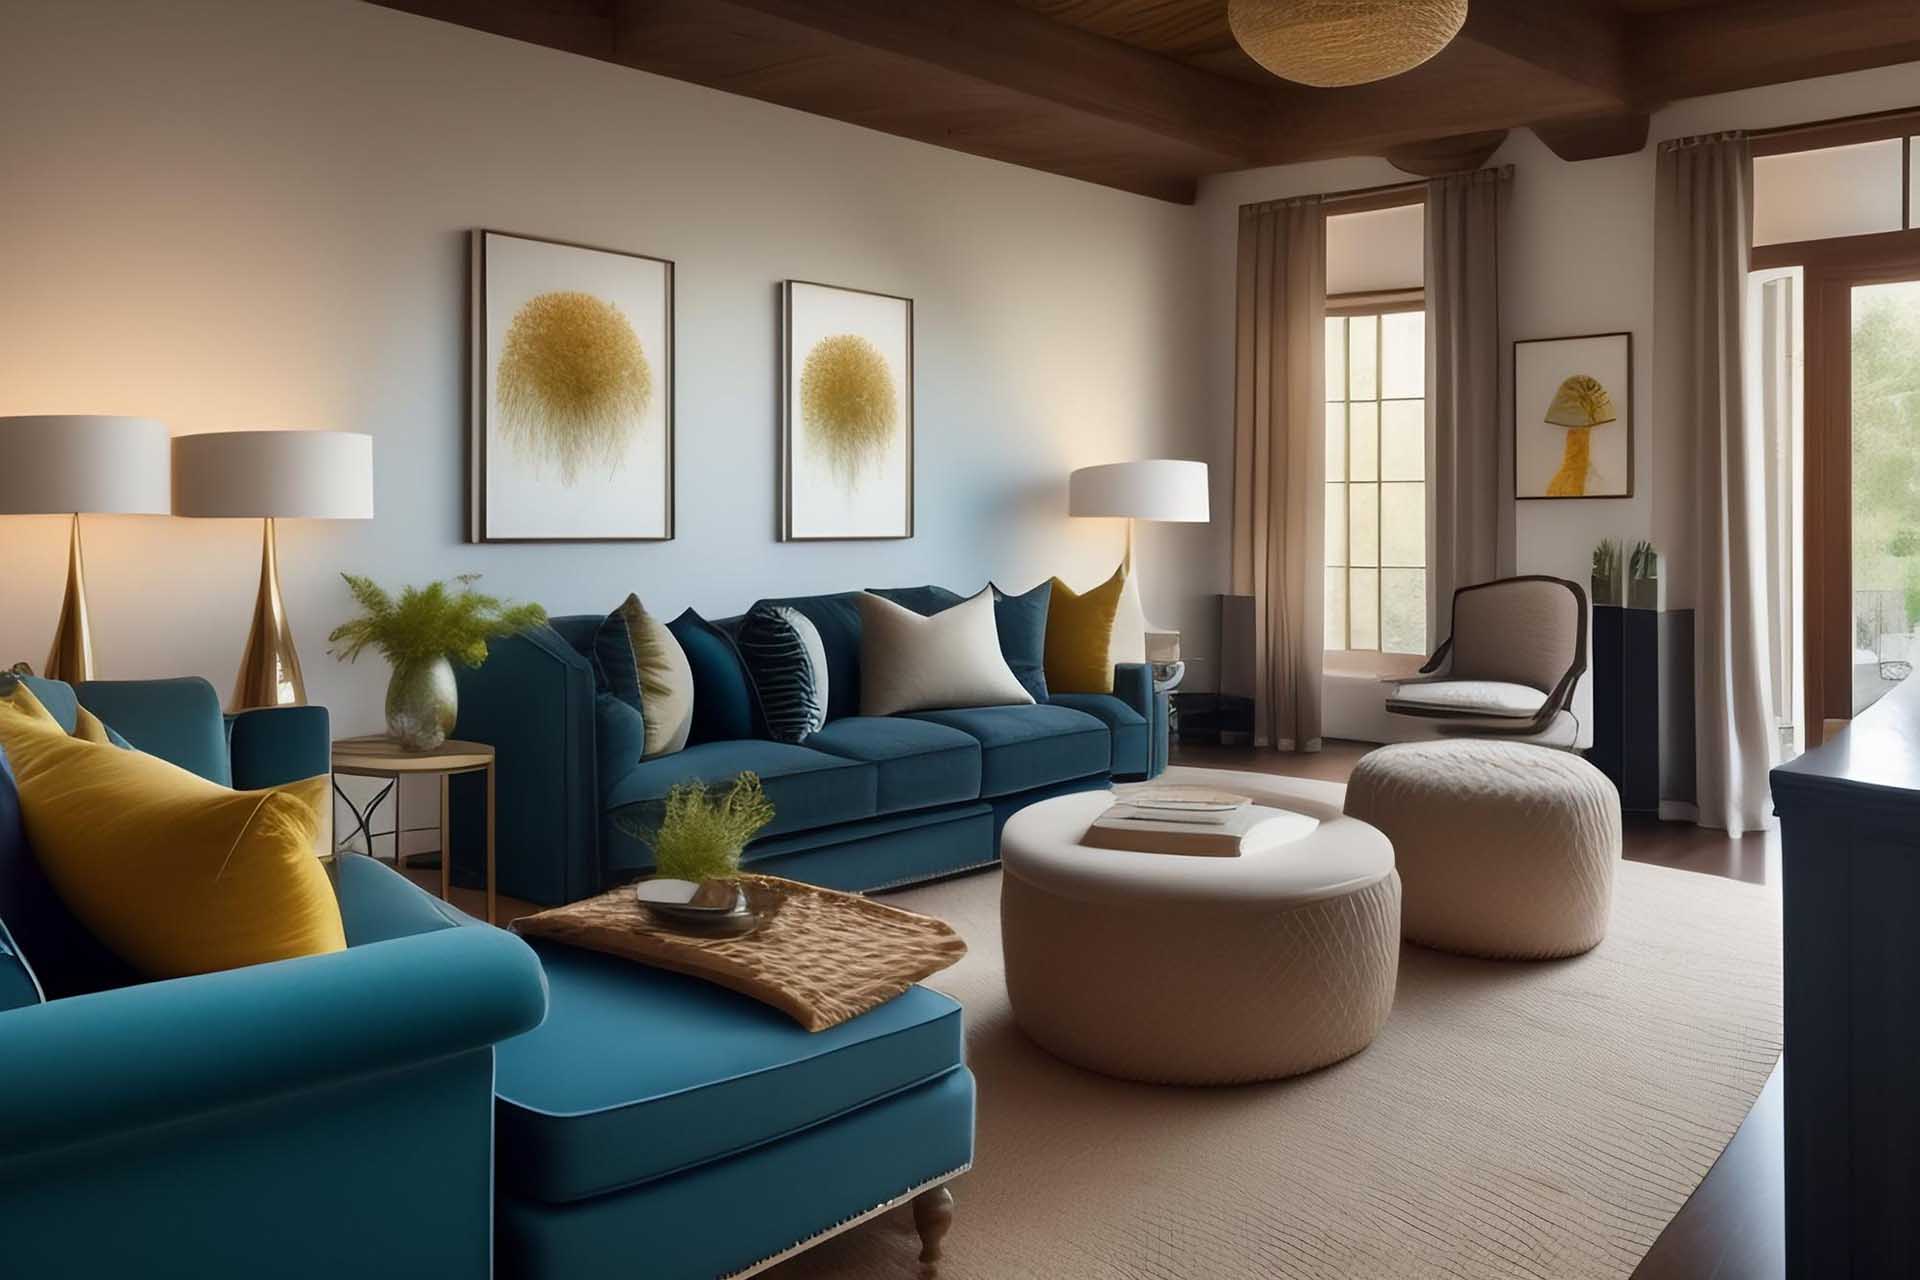 Il divano è uno degli elementi chiave nell'arredamento di una casa. Vediamo come scegliere il divano per la casa senza commettere errori.